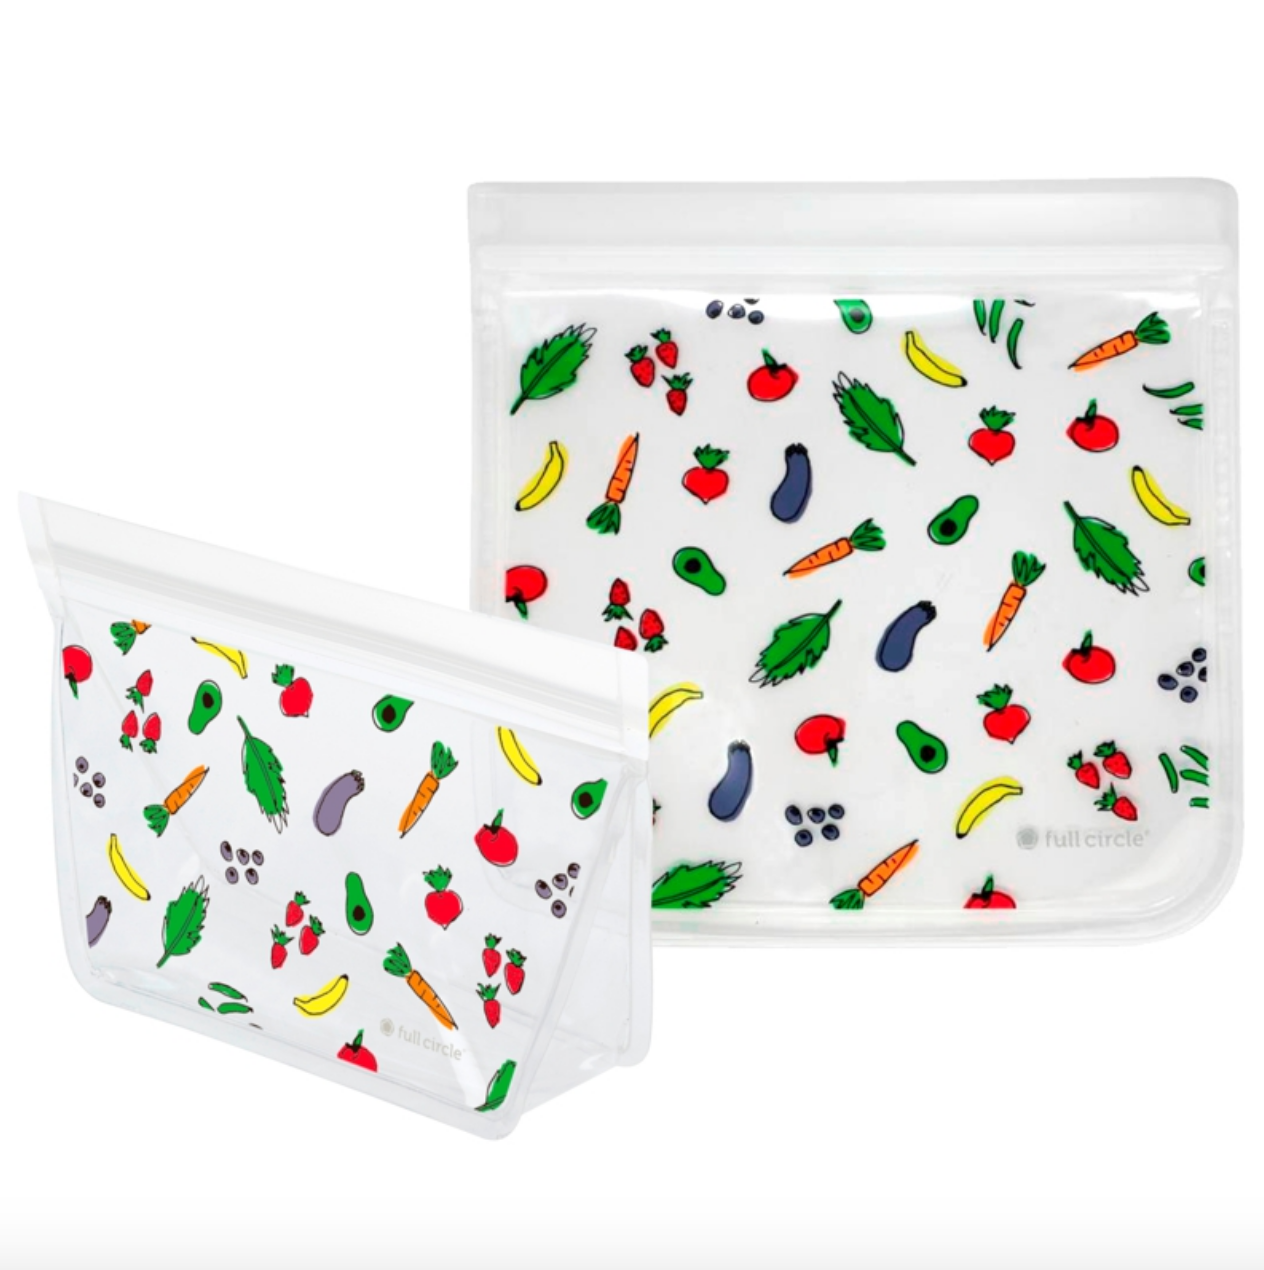 ZIPTUCK™ Reusable Lunch Bag Set - Vegetables